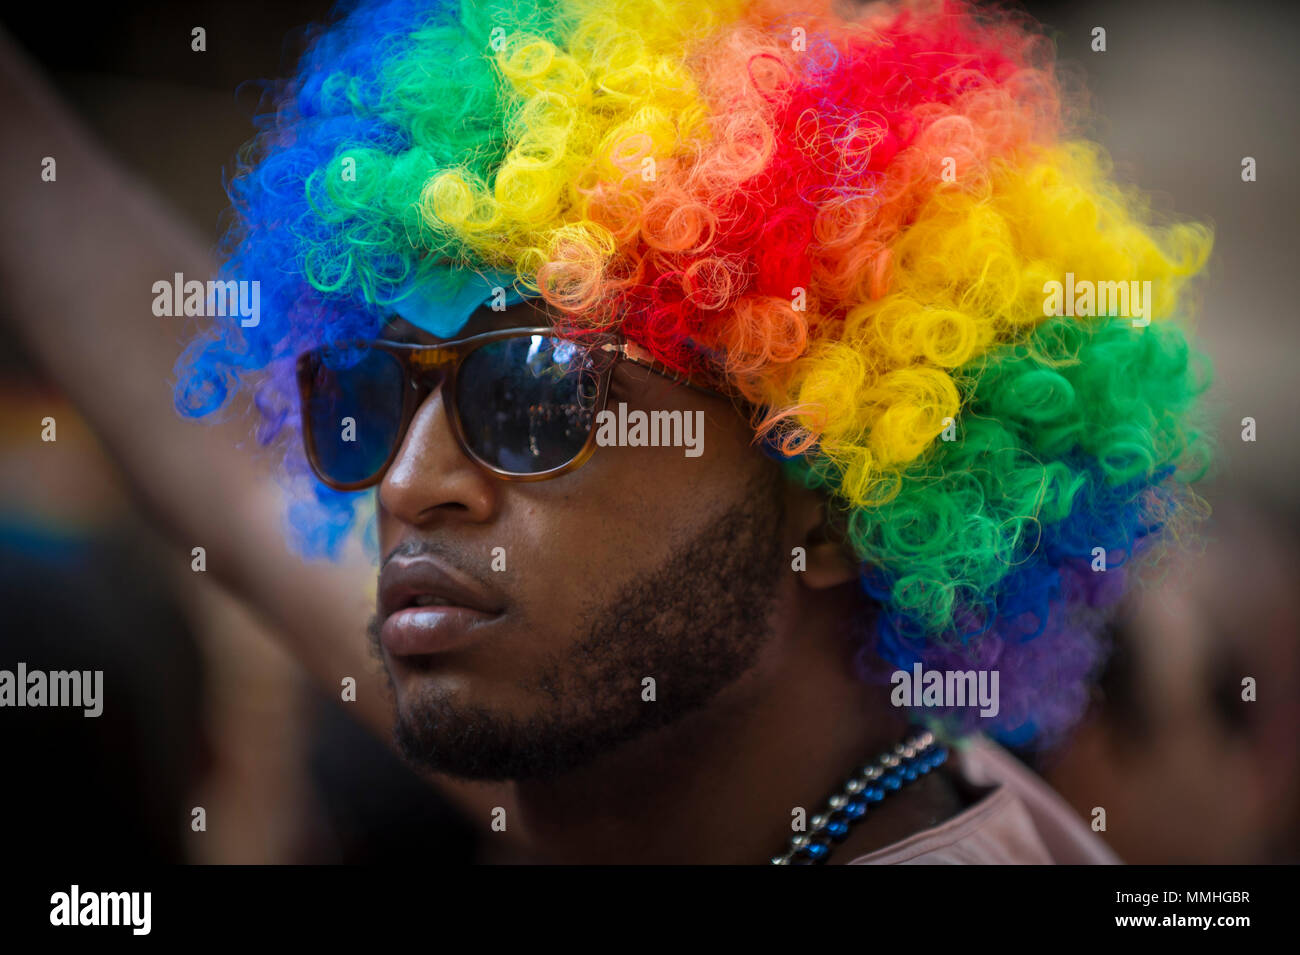 NEW YORK CITY - 25 Juni, 2017: Supporter in einem Regenbogen afro Perücke  am Rande der jährlichen Pride Parade durch Greenwich Village  Stockfotografie - Alamy